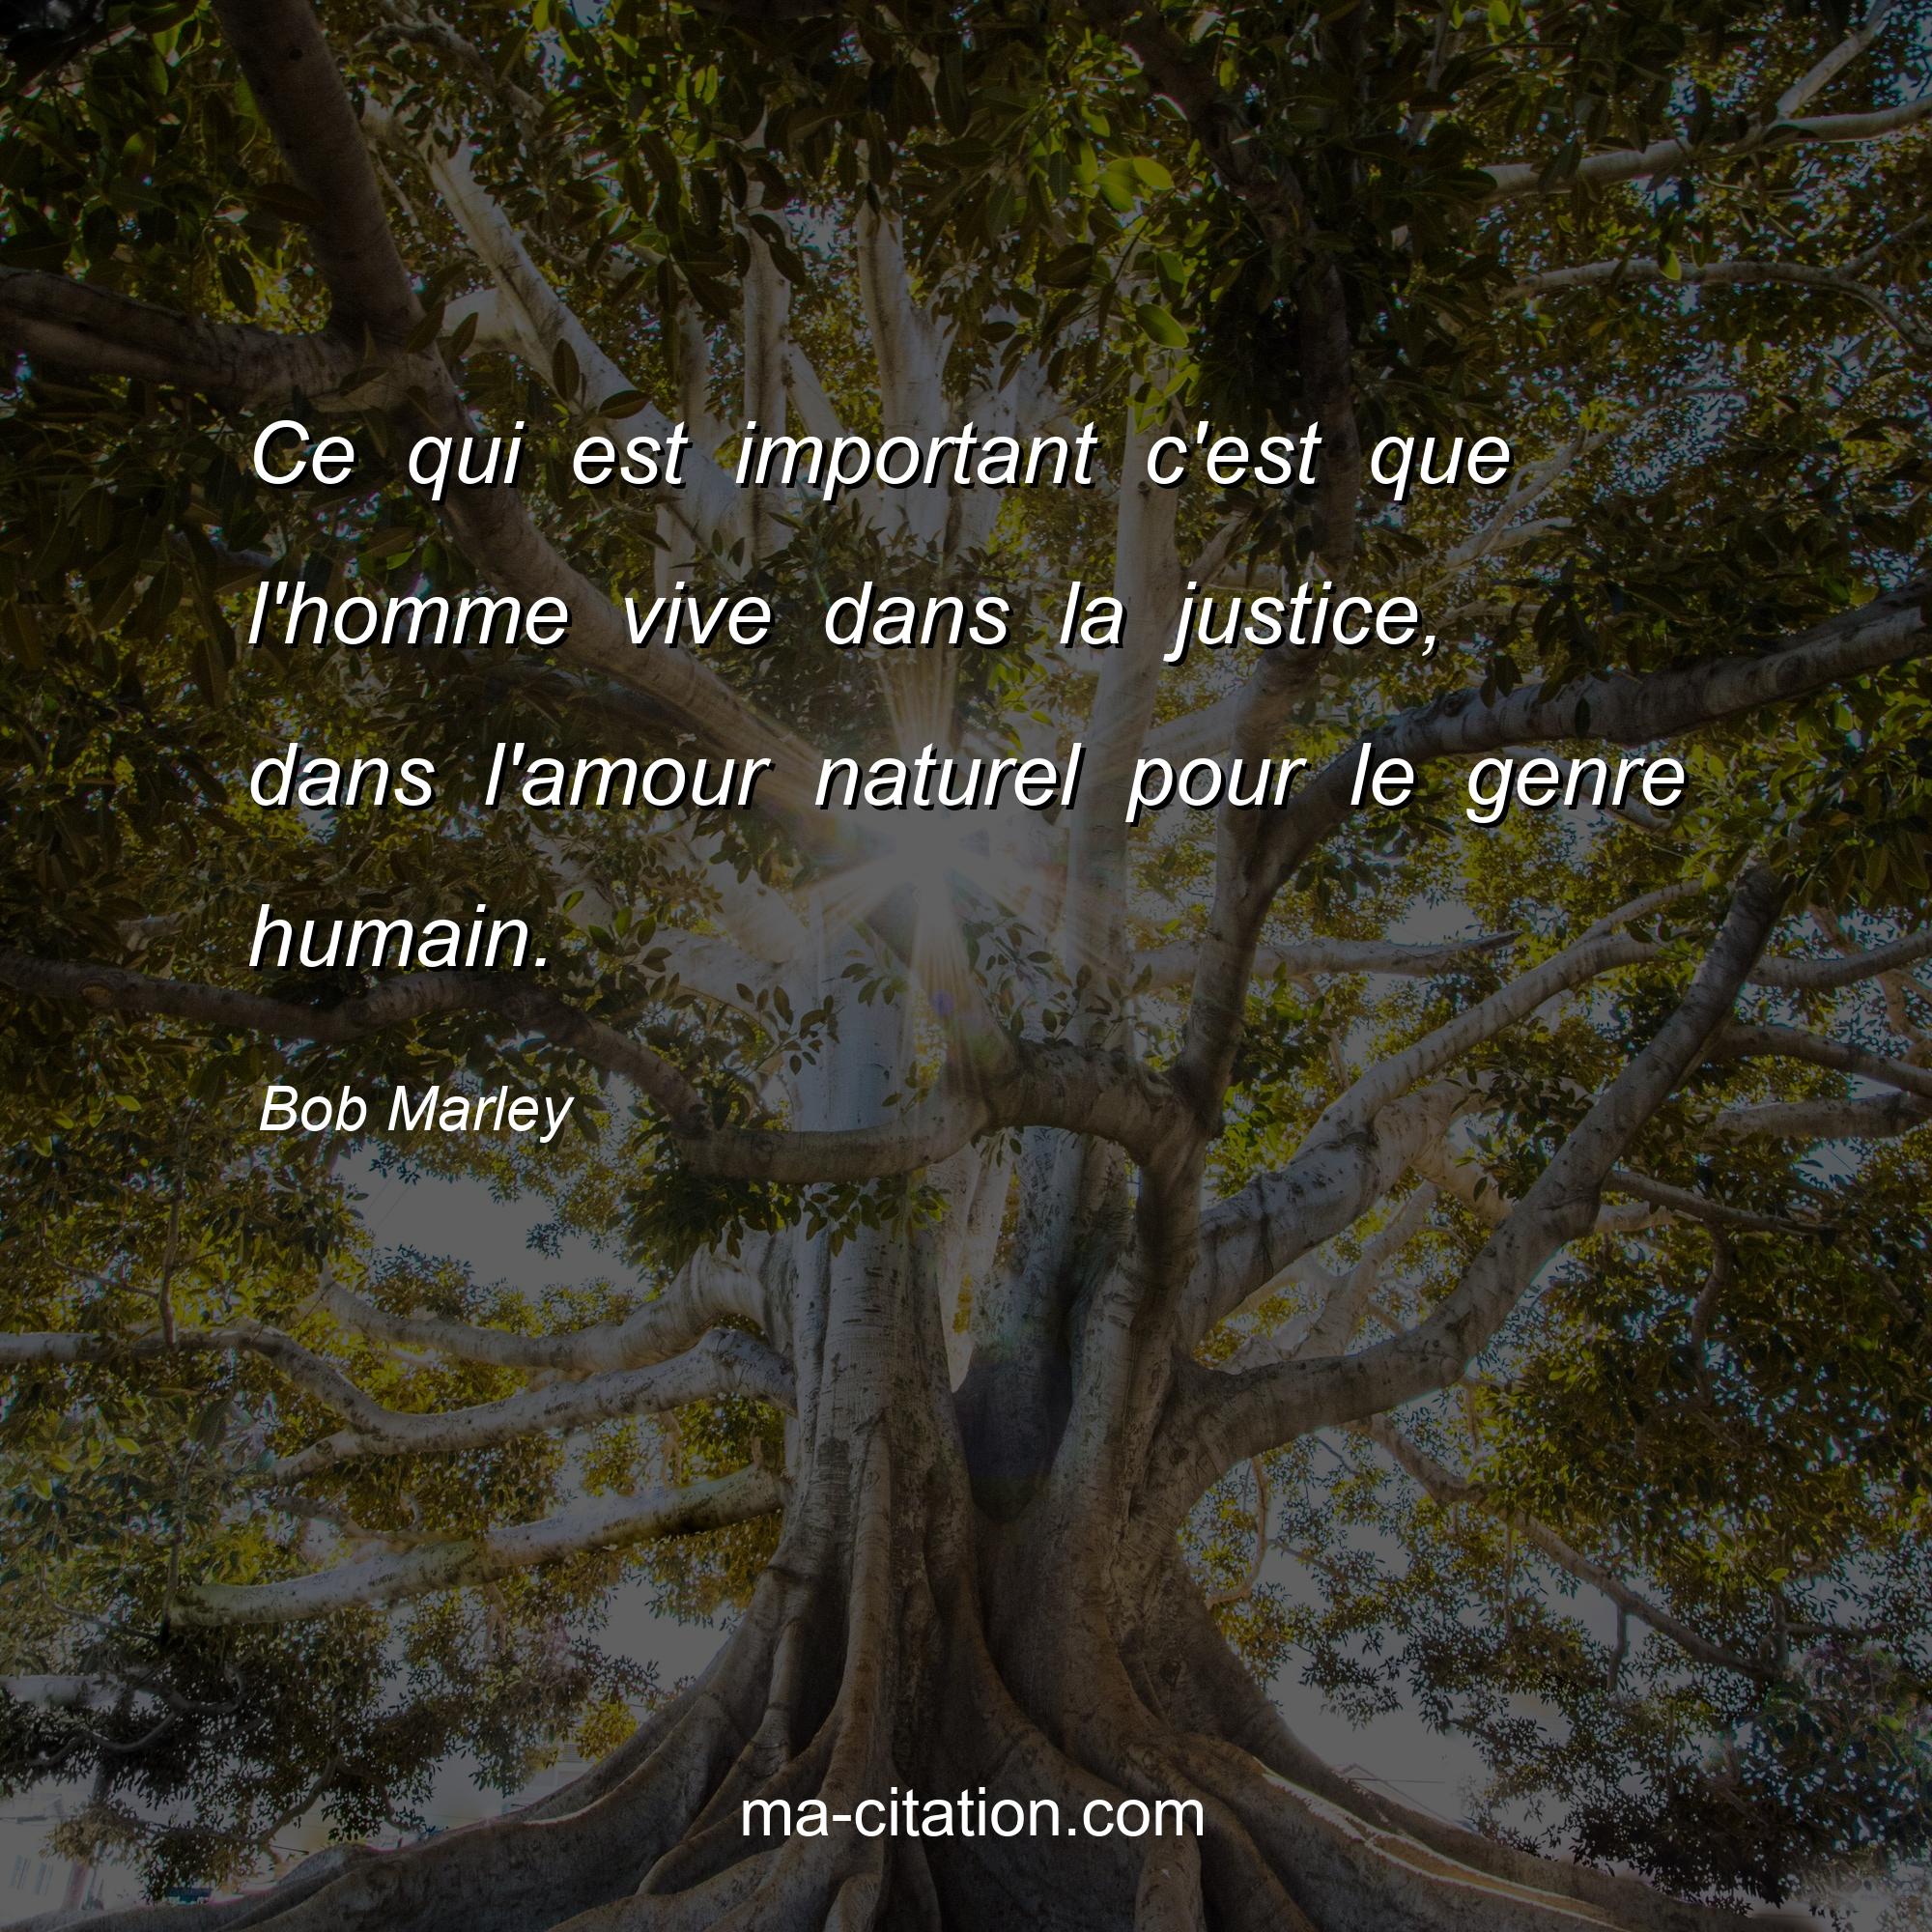 Bob Marley : Ce qui est important c'est que l'homme vive dans la justice, dans l'amour naturel pour le genre humain.